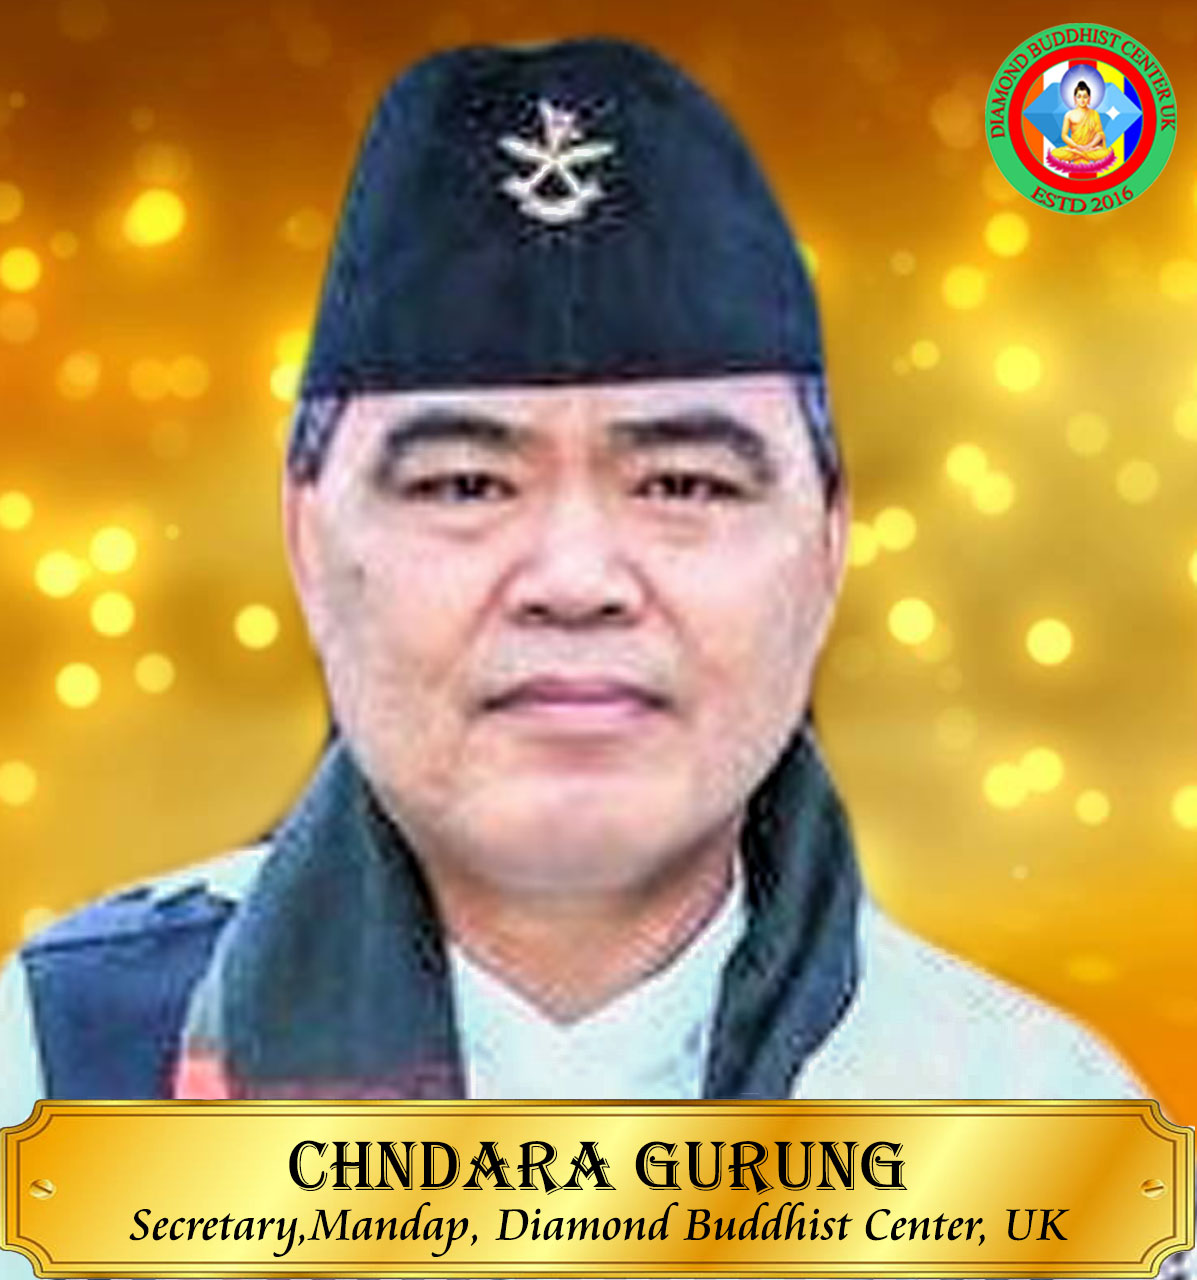 Chandra-Gurung-Temple-Secretary-Mandap2